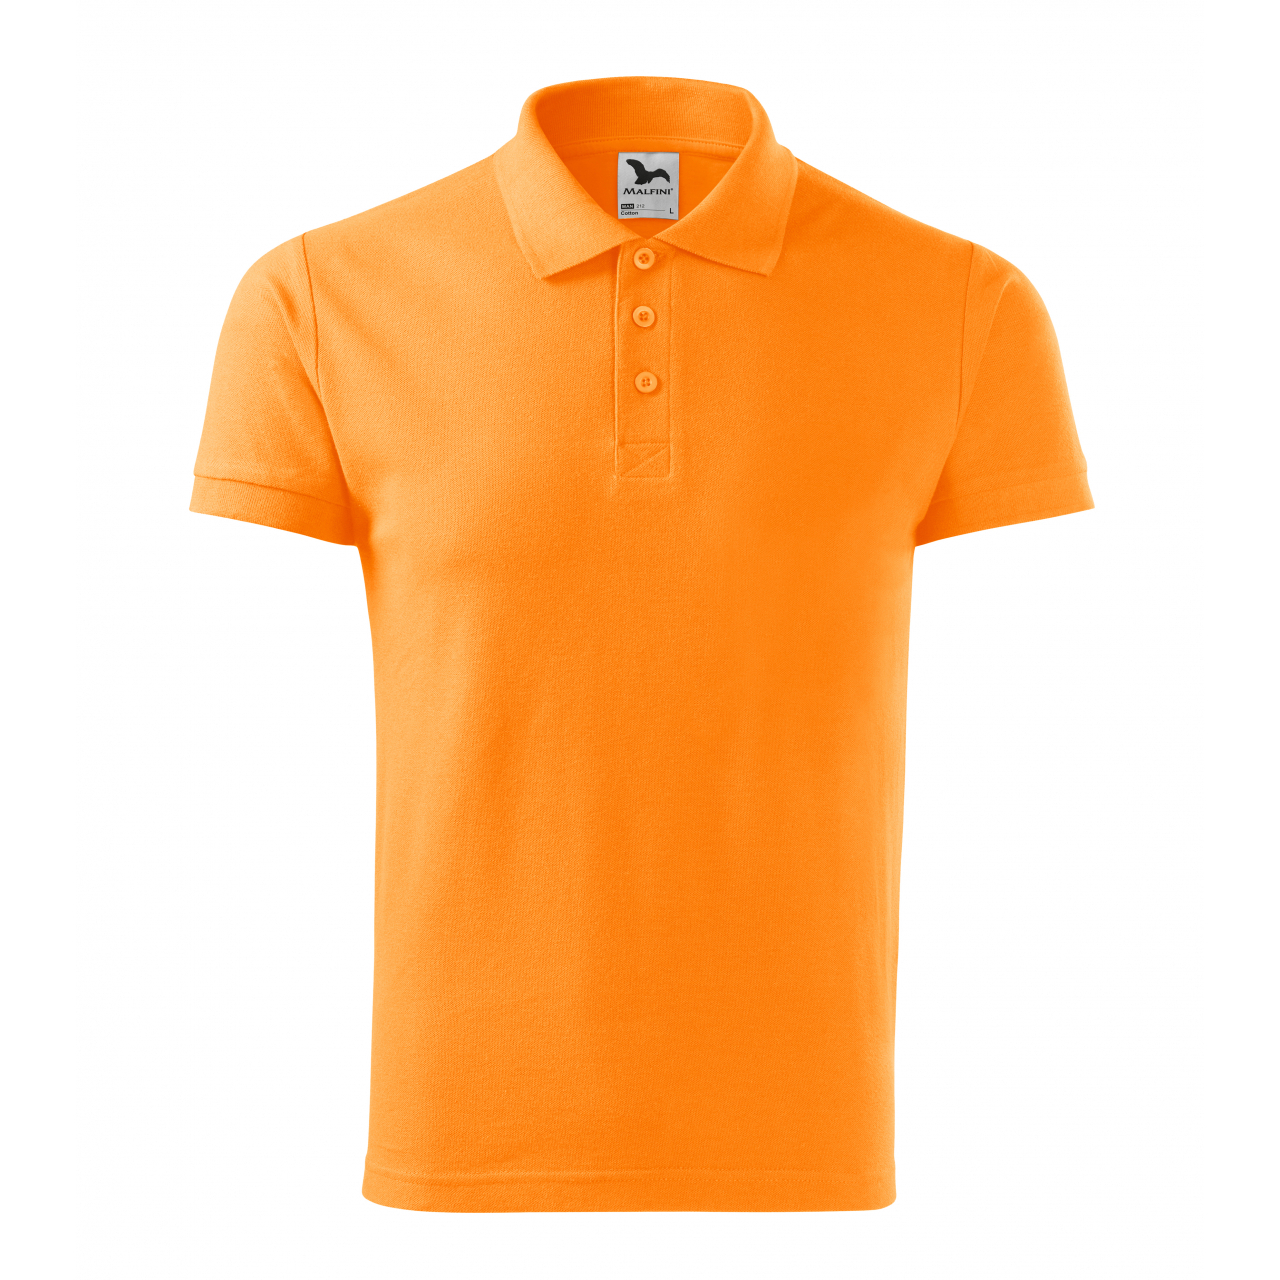 Polokošile pánská Malfini Cotton - světle oranžová, XL